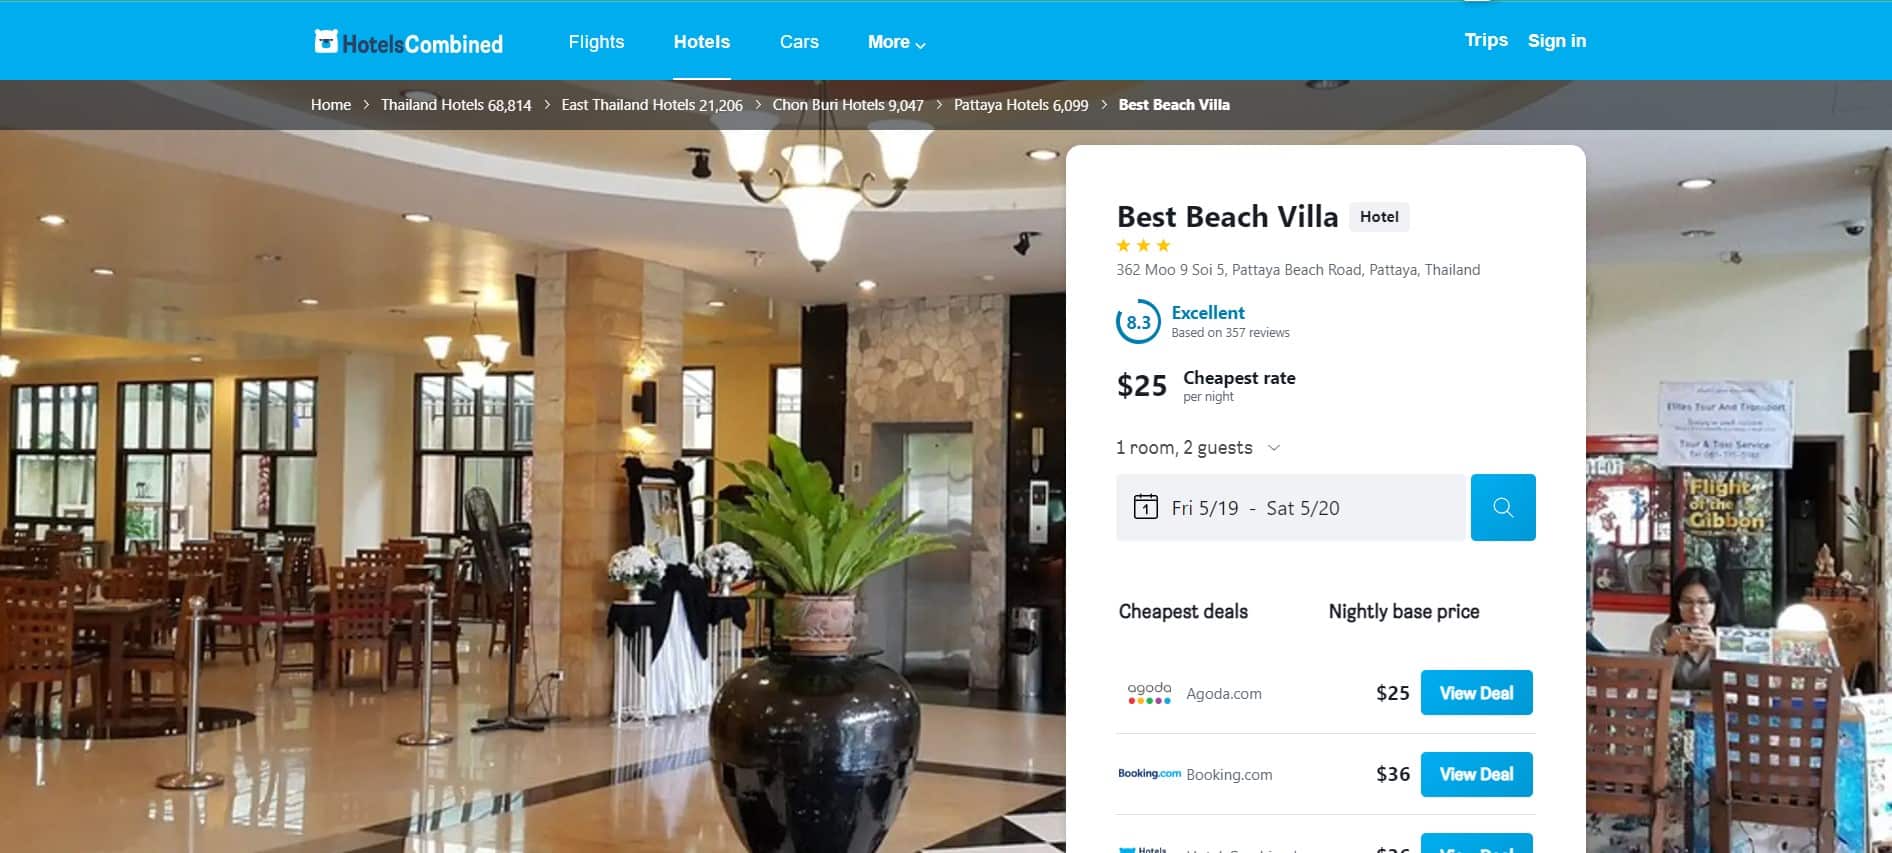 Best Beach Villa